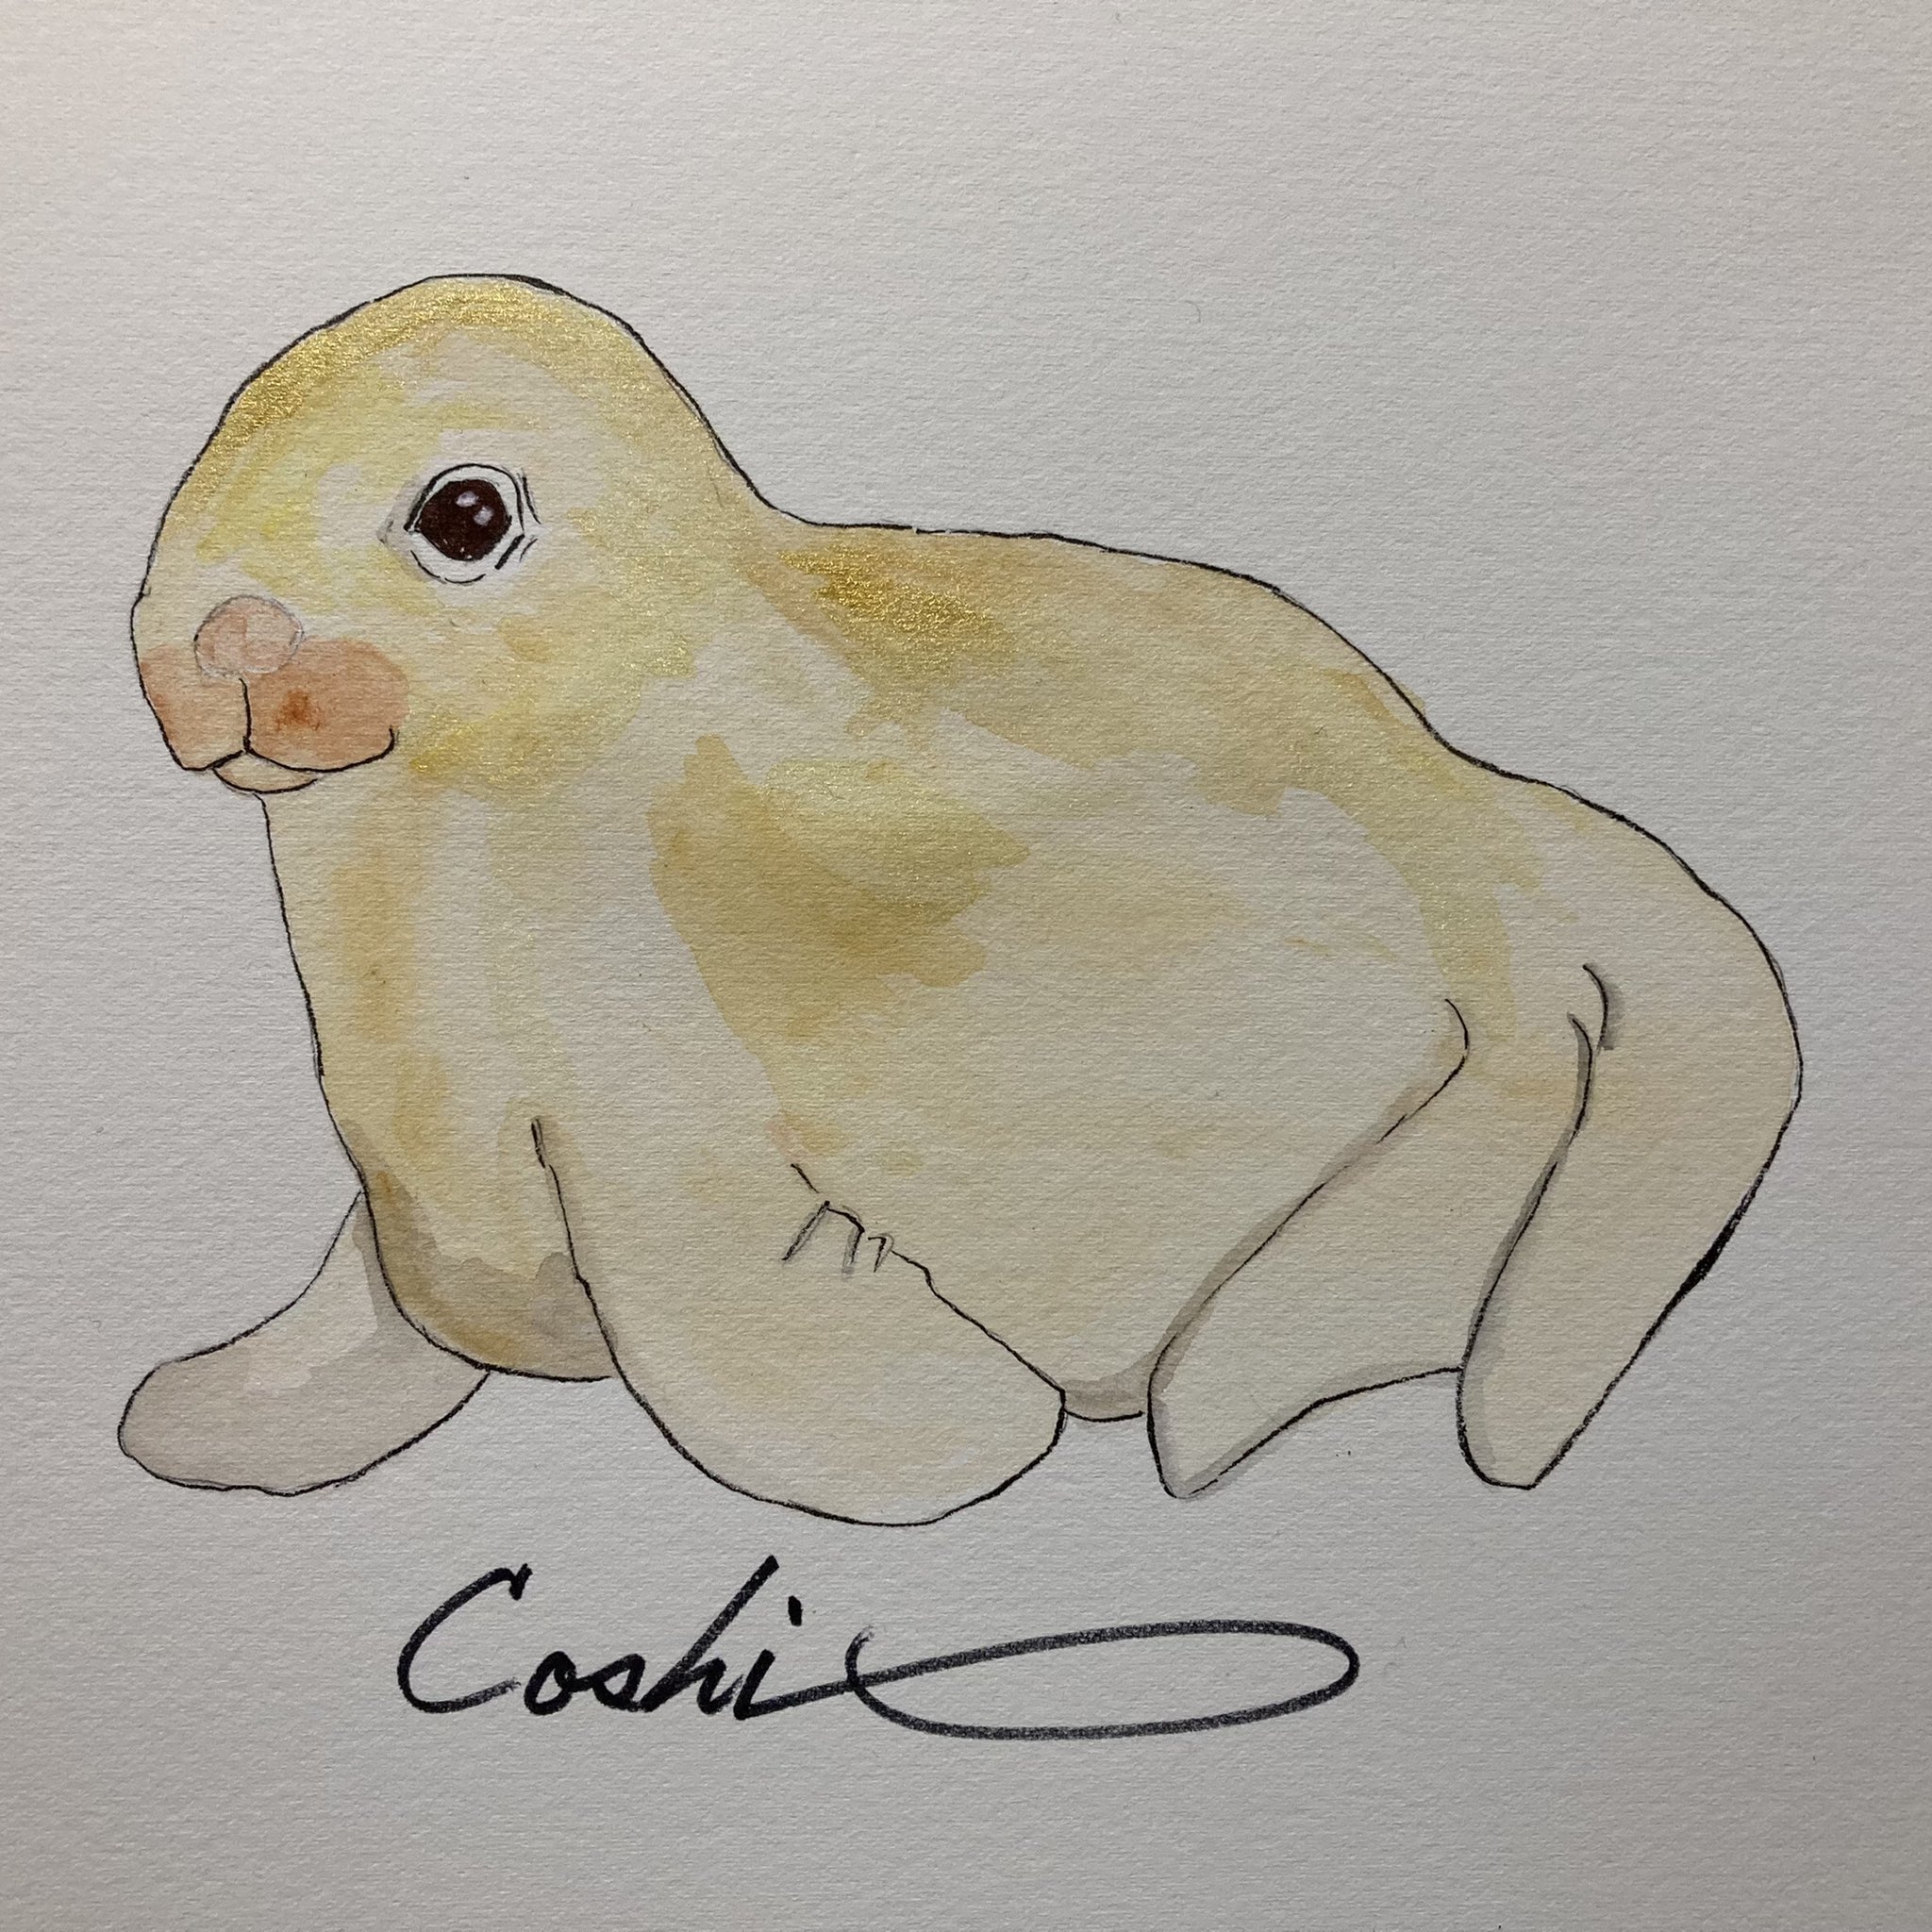 Coshi Wylde 幼いセイウチを描いてみました Art Fineart Drawing Watercolorpaintig Watercolor セイウチ Walrus Walruscab 海獣 動物 セイウチの赤ちゃん かわいい あどけない 絵 Illustrator Illustrate イラスト イラスト好きな